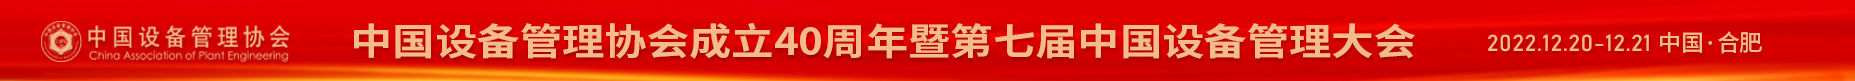 中国设备管理协会成立40周年暨2022（第七届）中国设备管理大会  时间：2022年12月20-21日  地点:合肥市